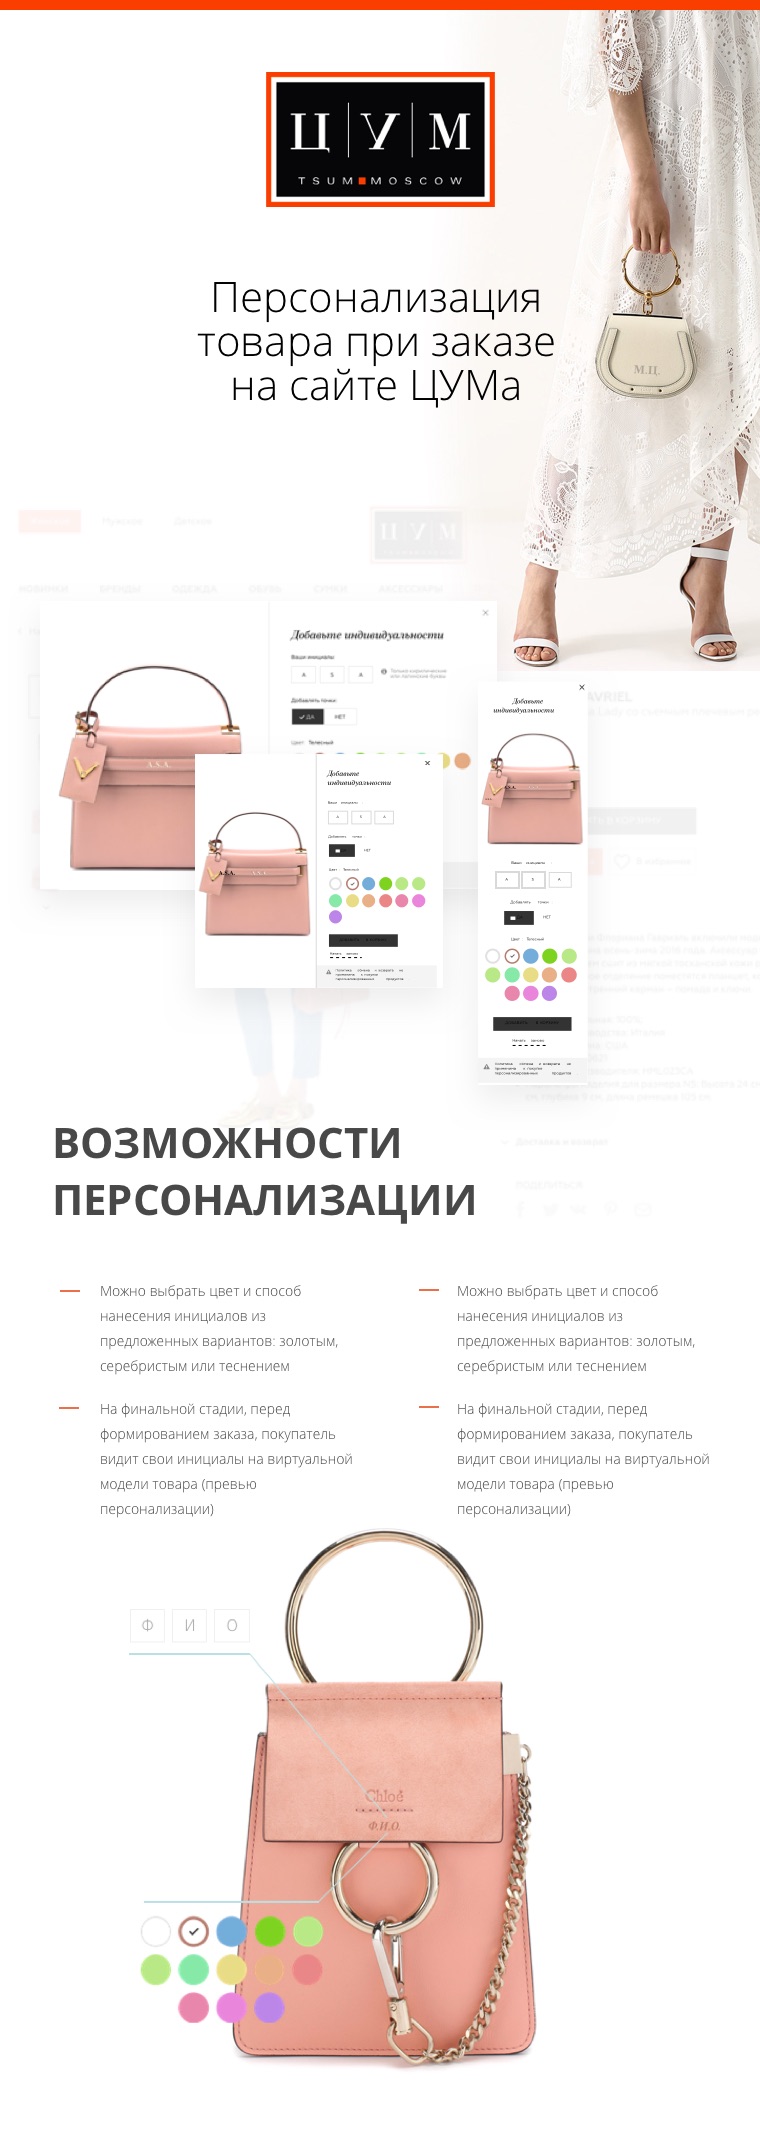 Эскиз проекта Персонализация товара при заказе на сайте ЦУМа, Москва